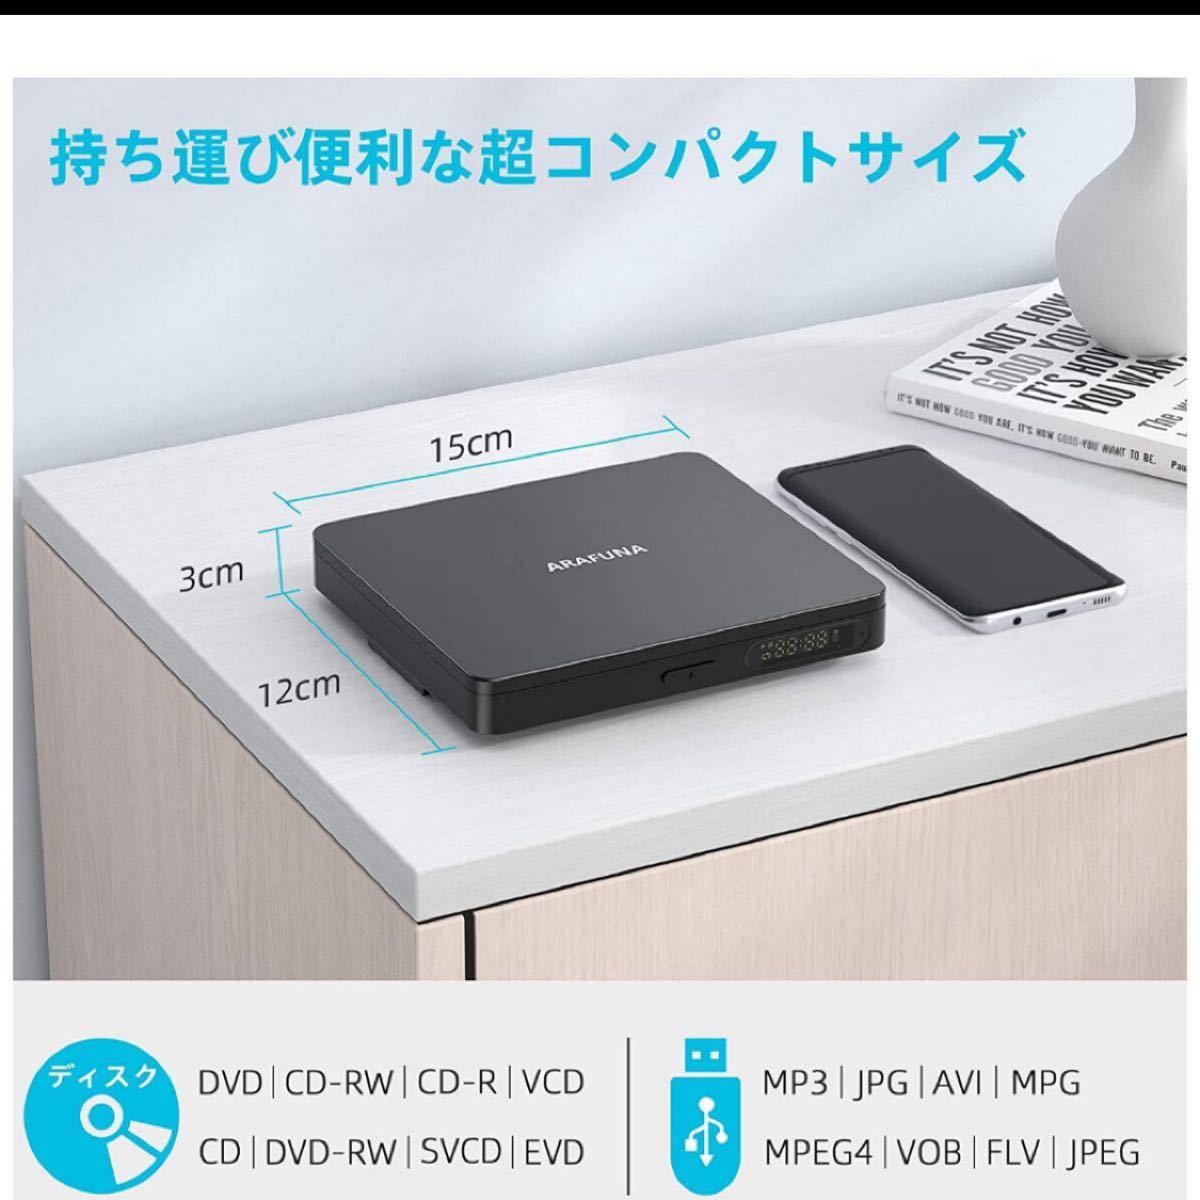 ミニDVDプレーヤー Arafuna 小型dvdプレーヤー 高画質 リージョンフリー dvd/cdプレーヤー